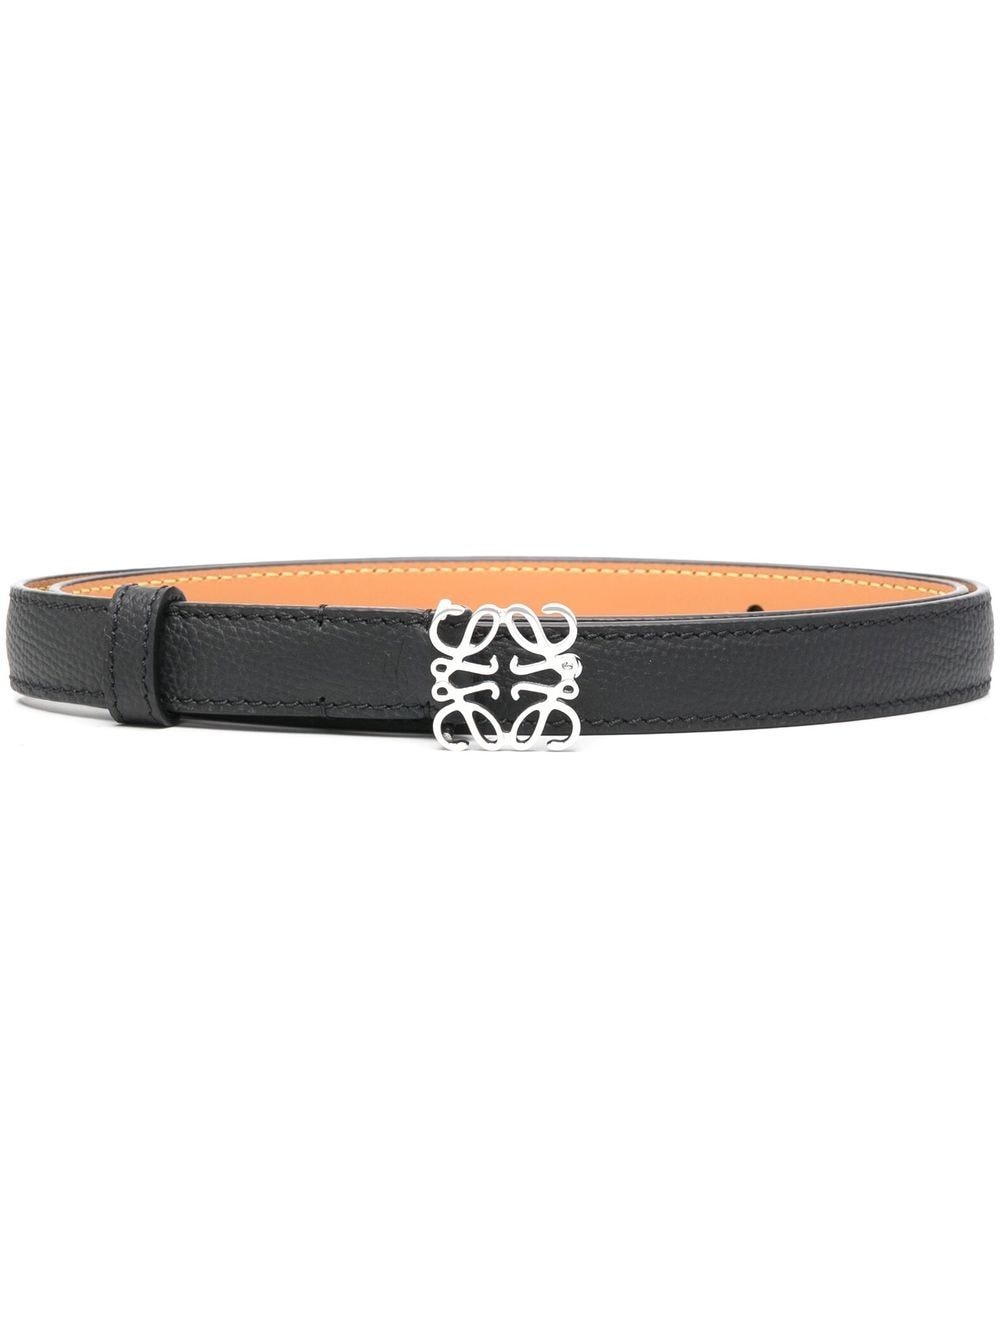 Loewe Anagram Buckle Belt In Black